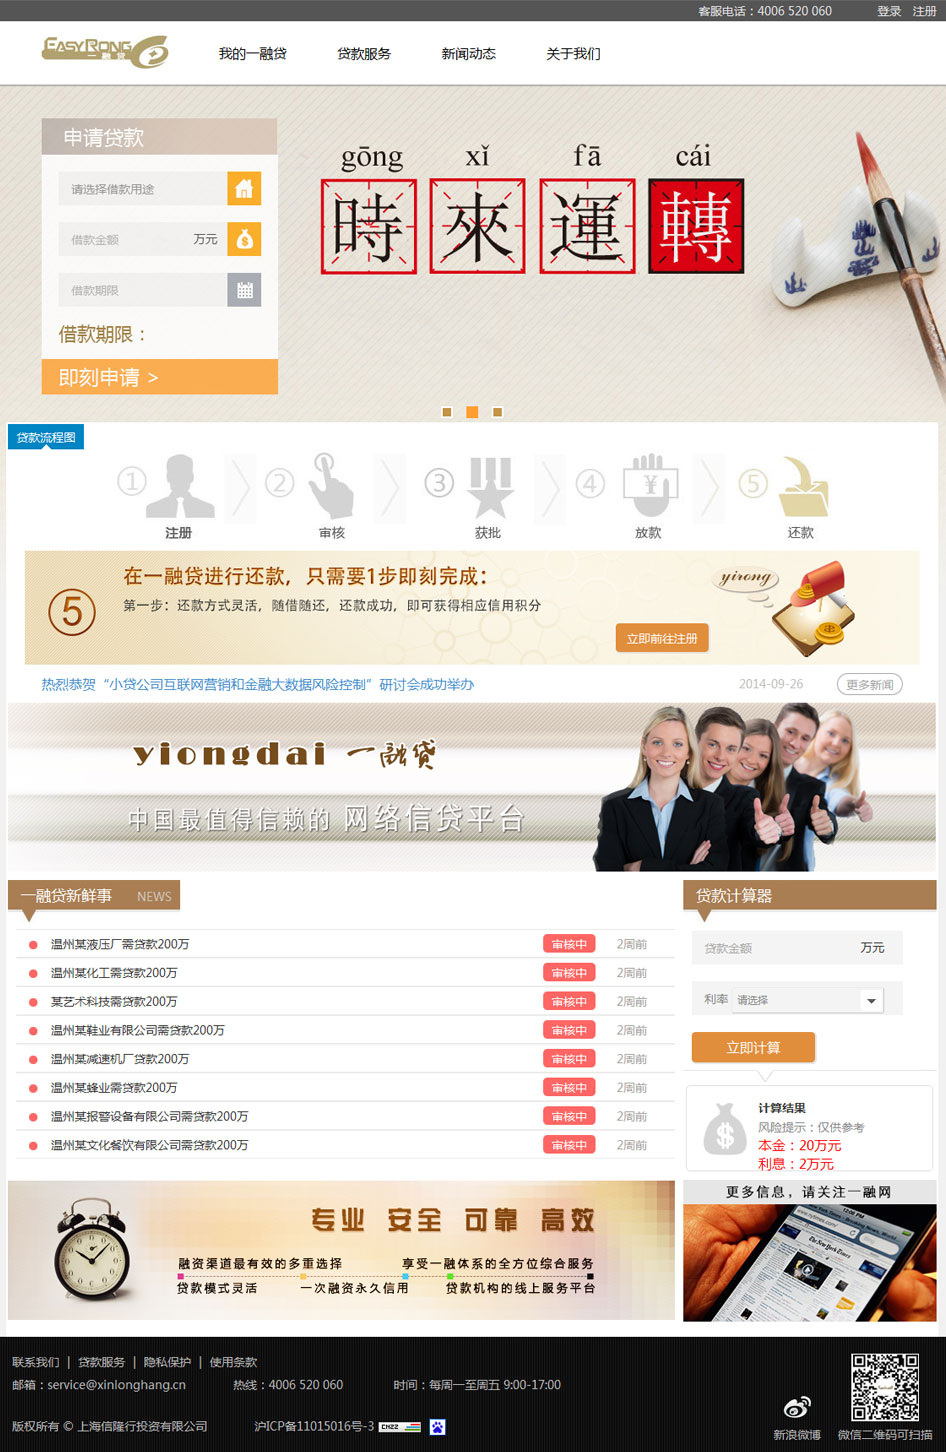 上海网站建设项目之一融贷网